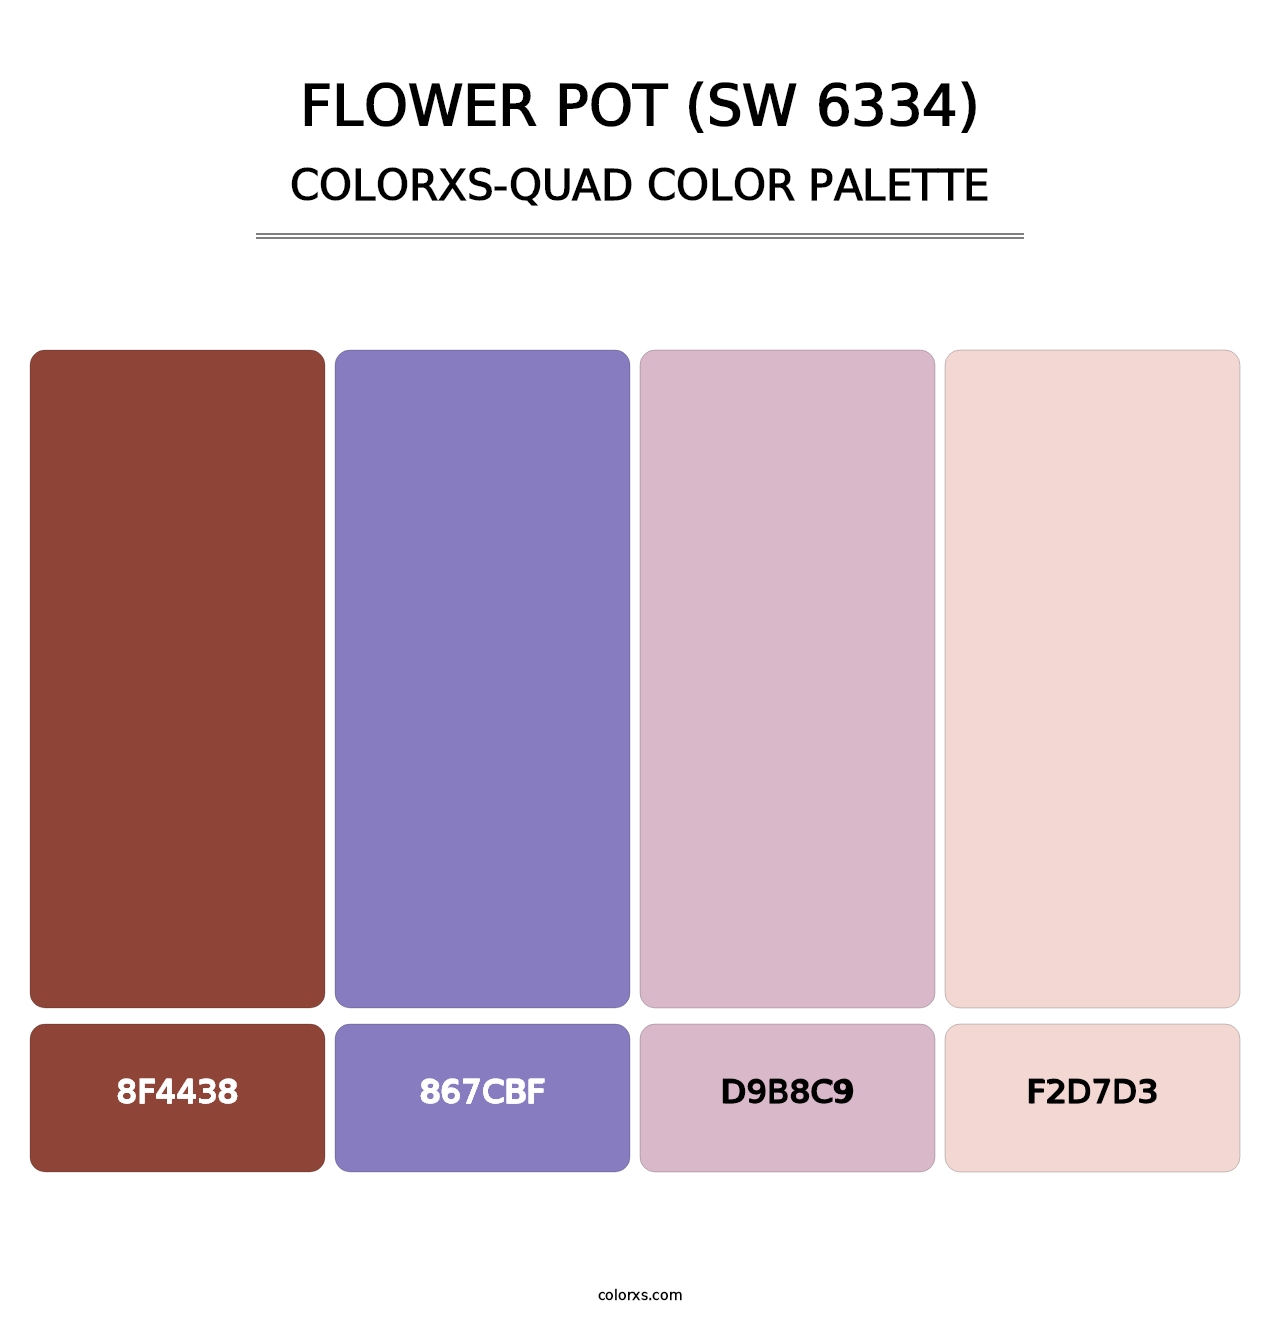 Flower Pot (SW 6334) - Colorxs Quad Palette